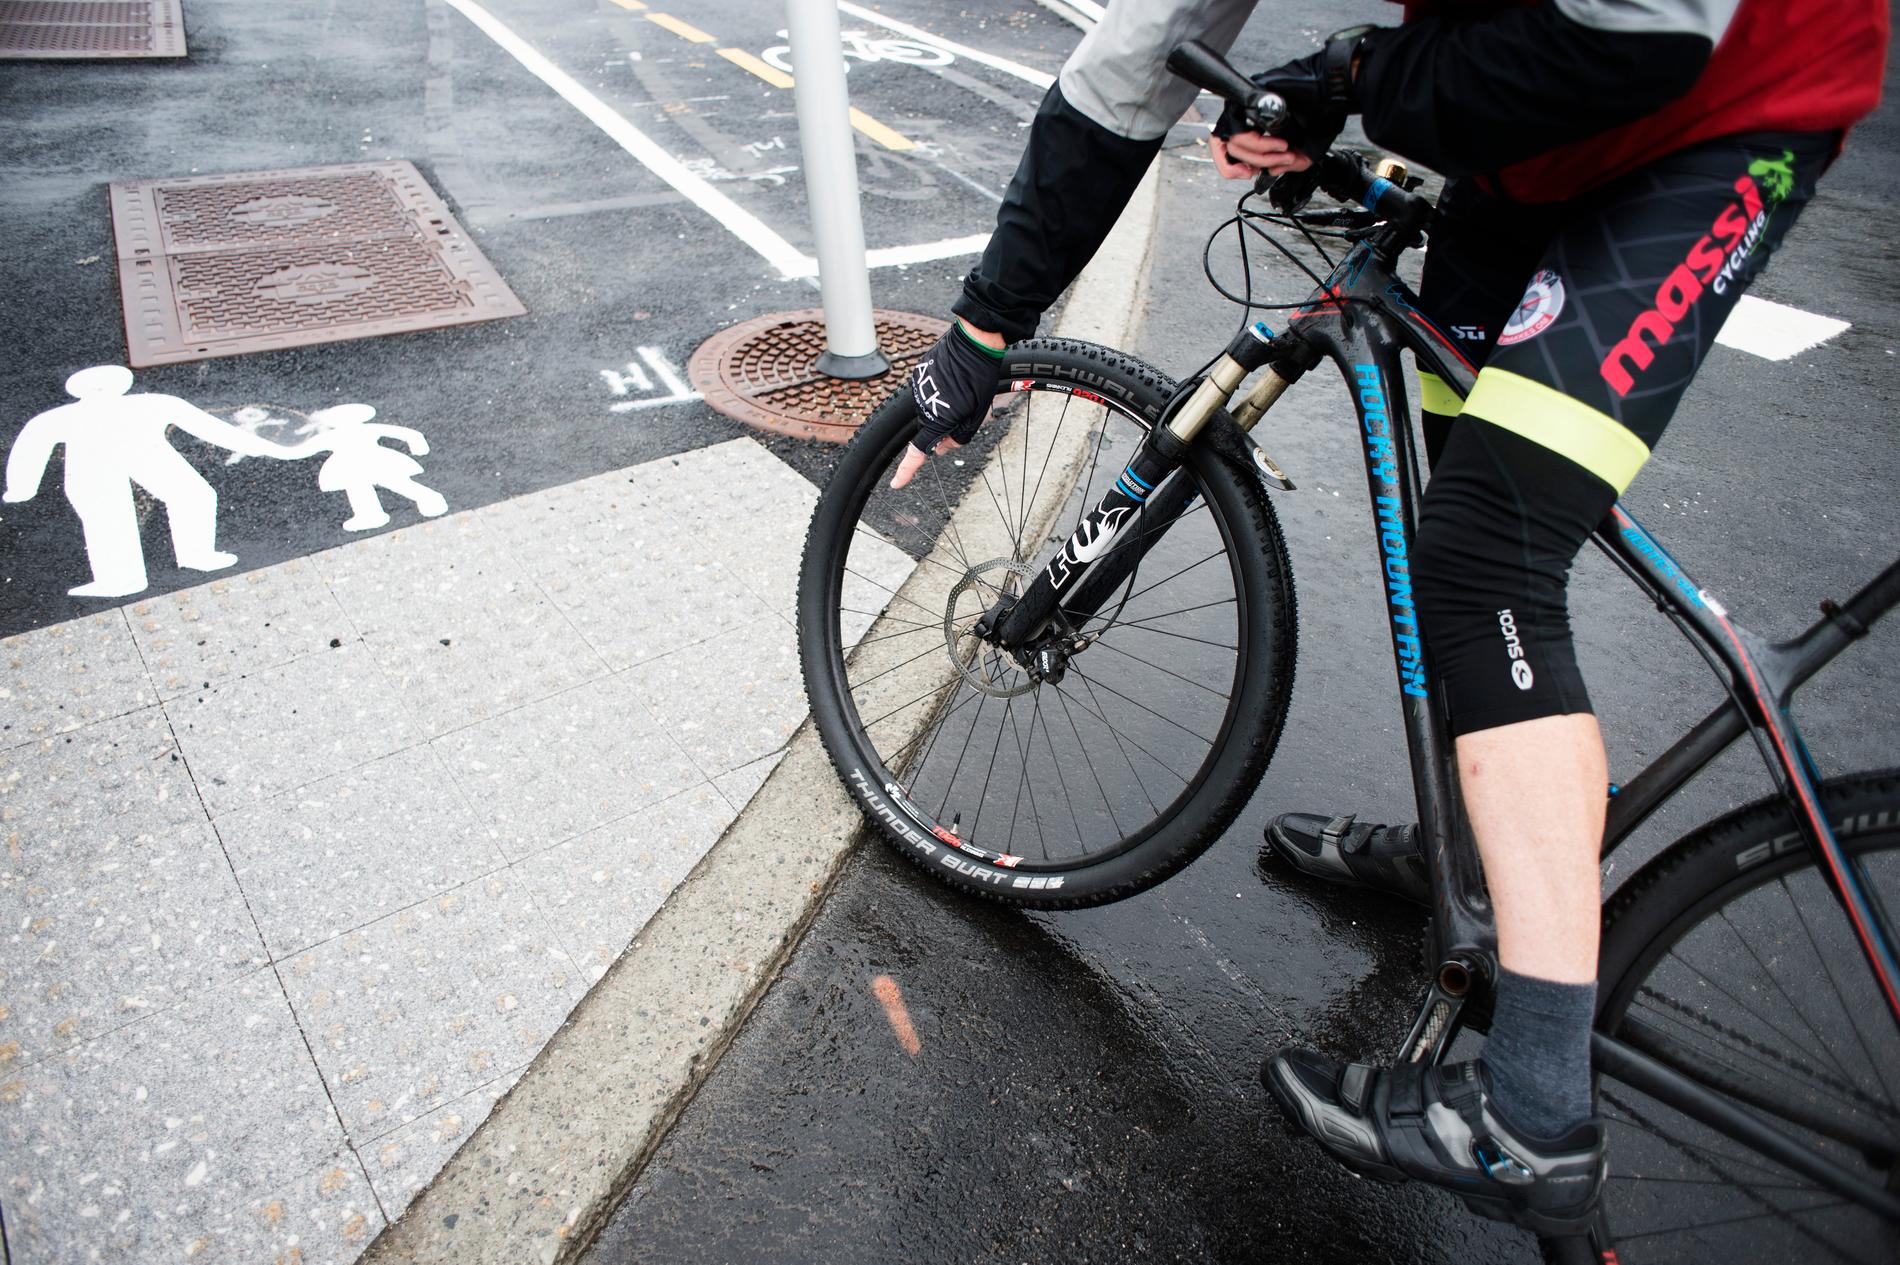 Syklister bør ikke ha det for travelt når de passerer barn, mener innsenderen. 